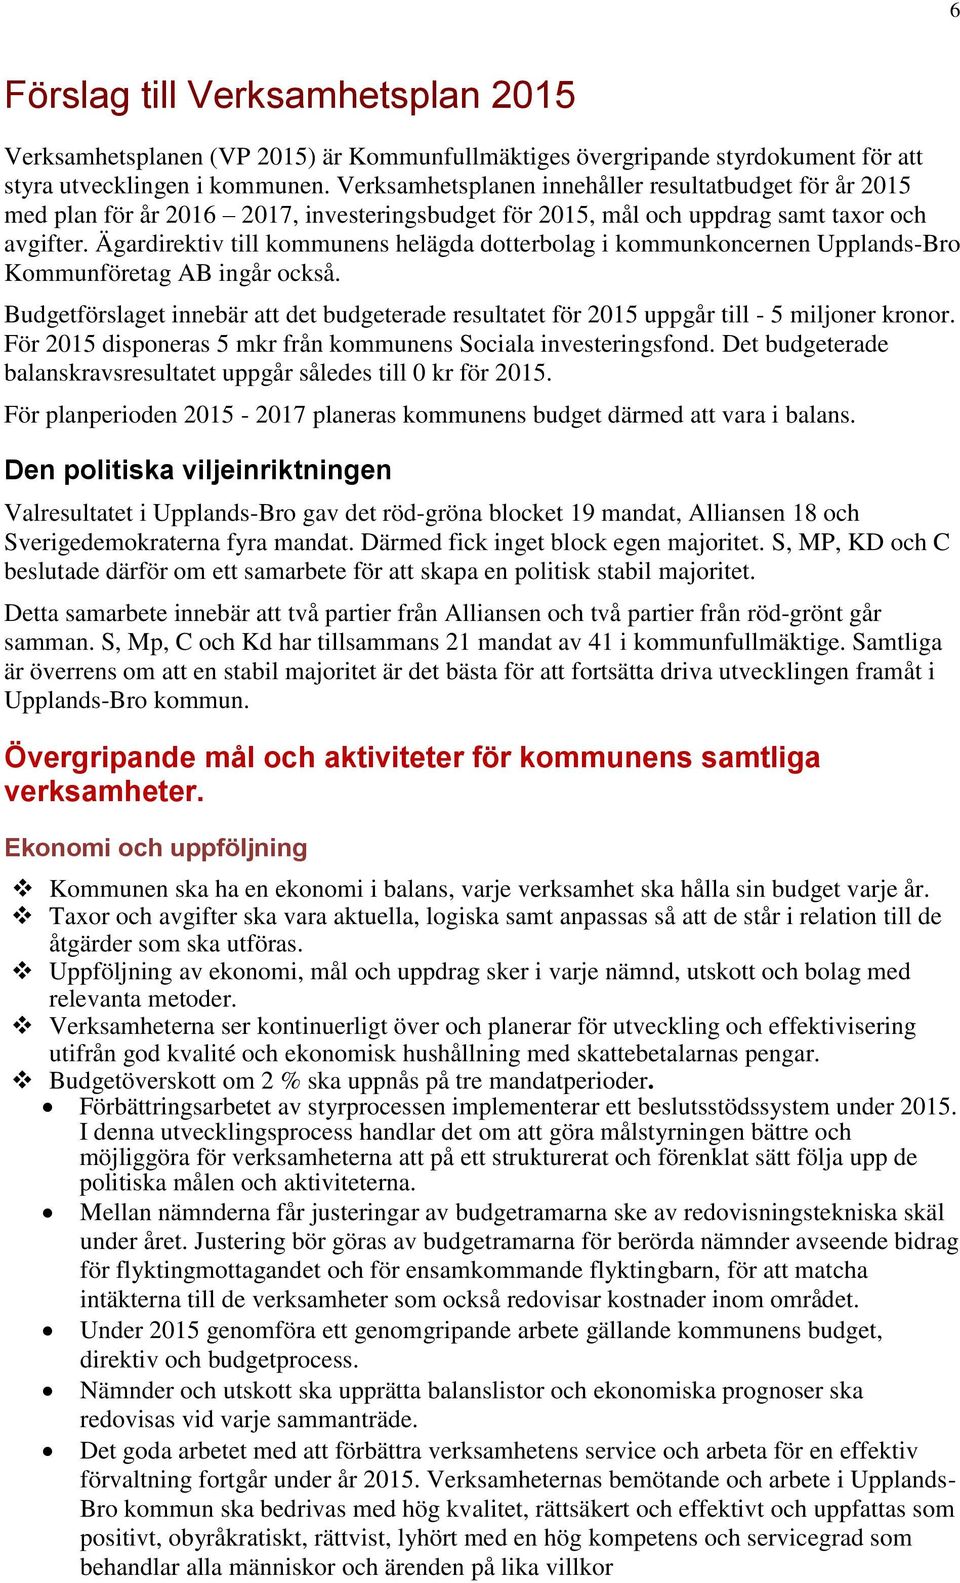 Ägardirektiv till kommunens helägda dotterbolag i kommunkoncernen Upplands-Bro Kommunföretag AB ingår också.